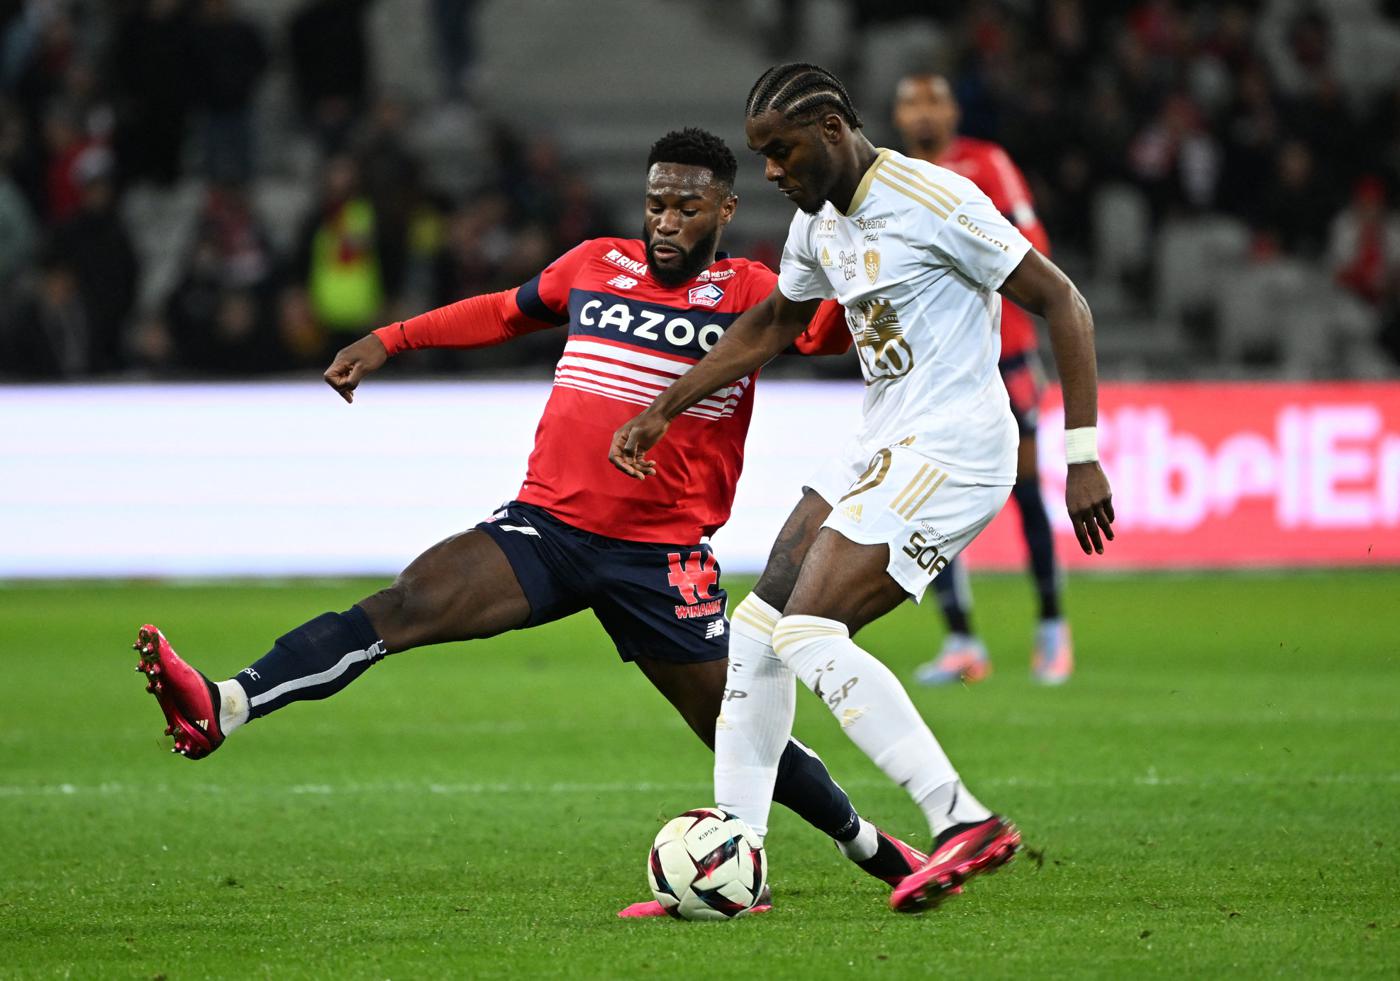 "Lille v Brest - 2-1. Mistrzostwa Francji, runda 25. Przegląd meczu, statystyki.